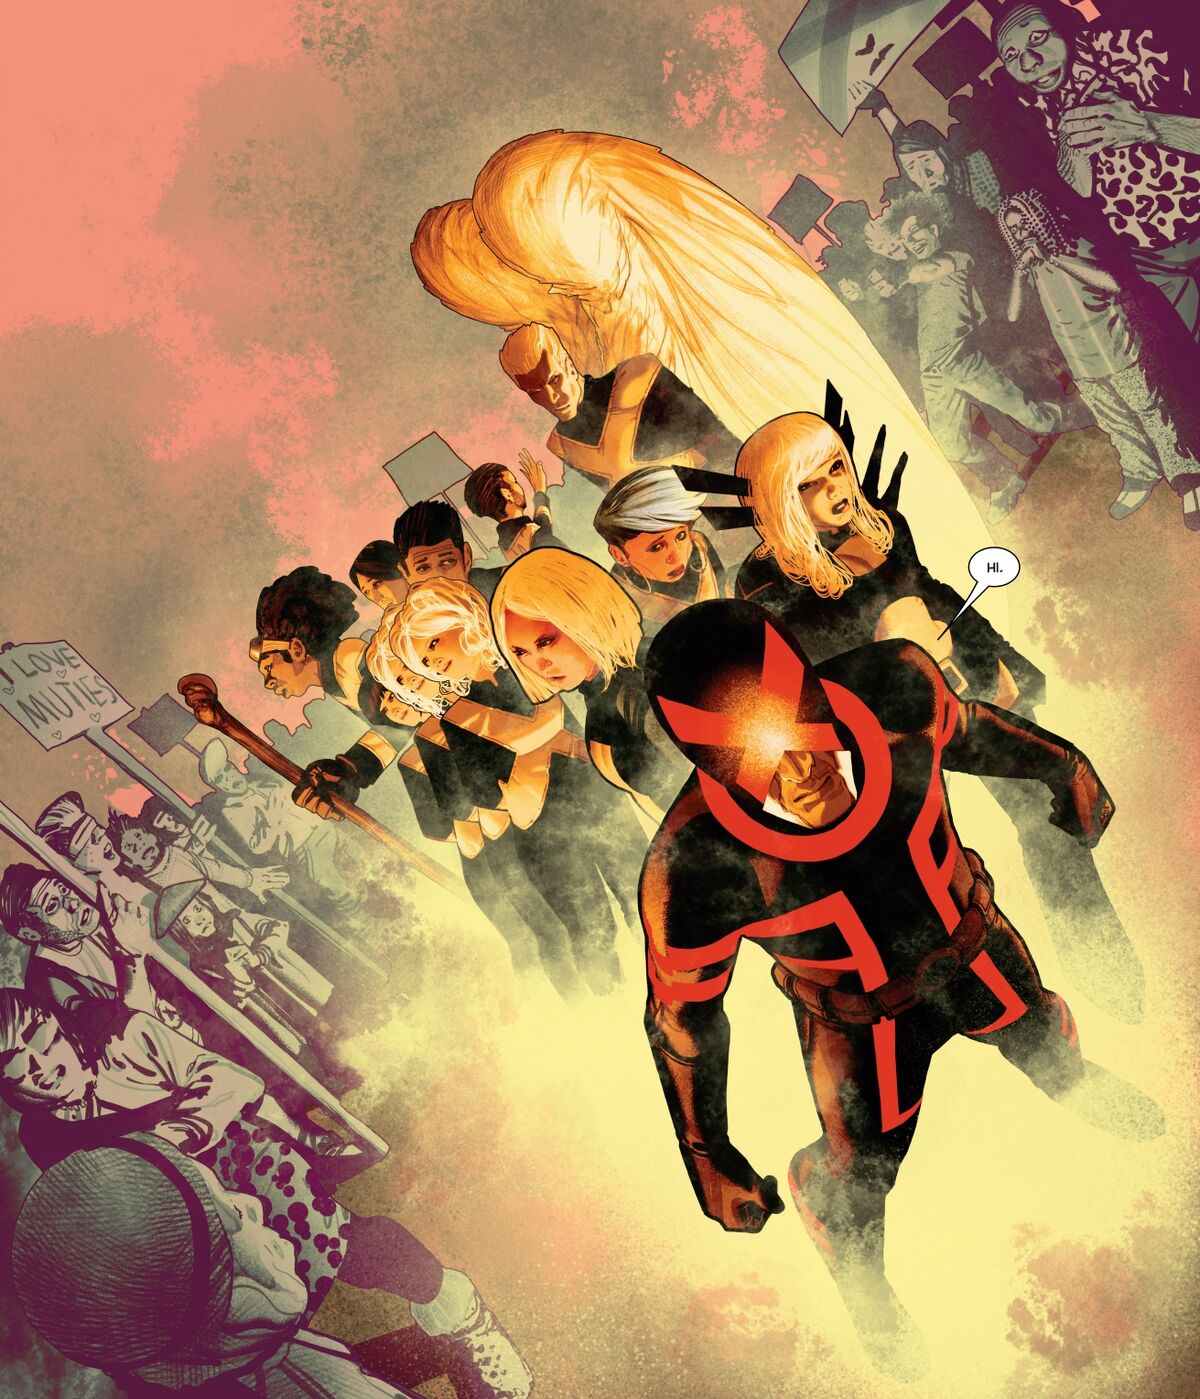 Universo Marvel 616: Xavier careca e outras informações sobre os X-Men